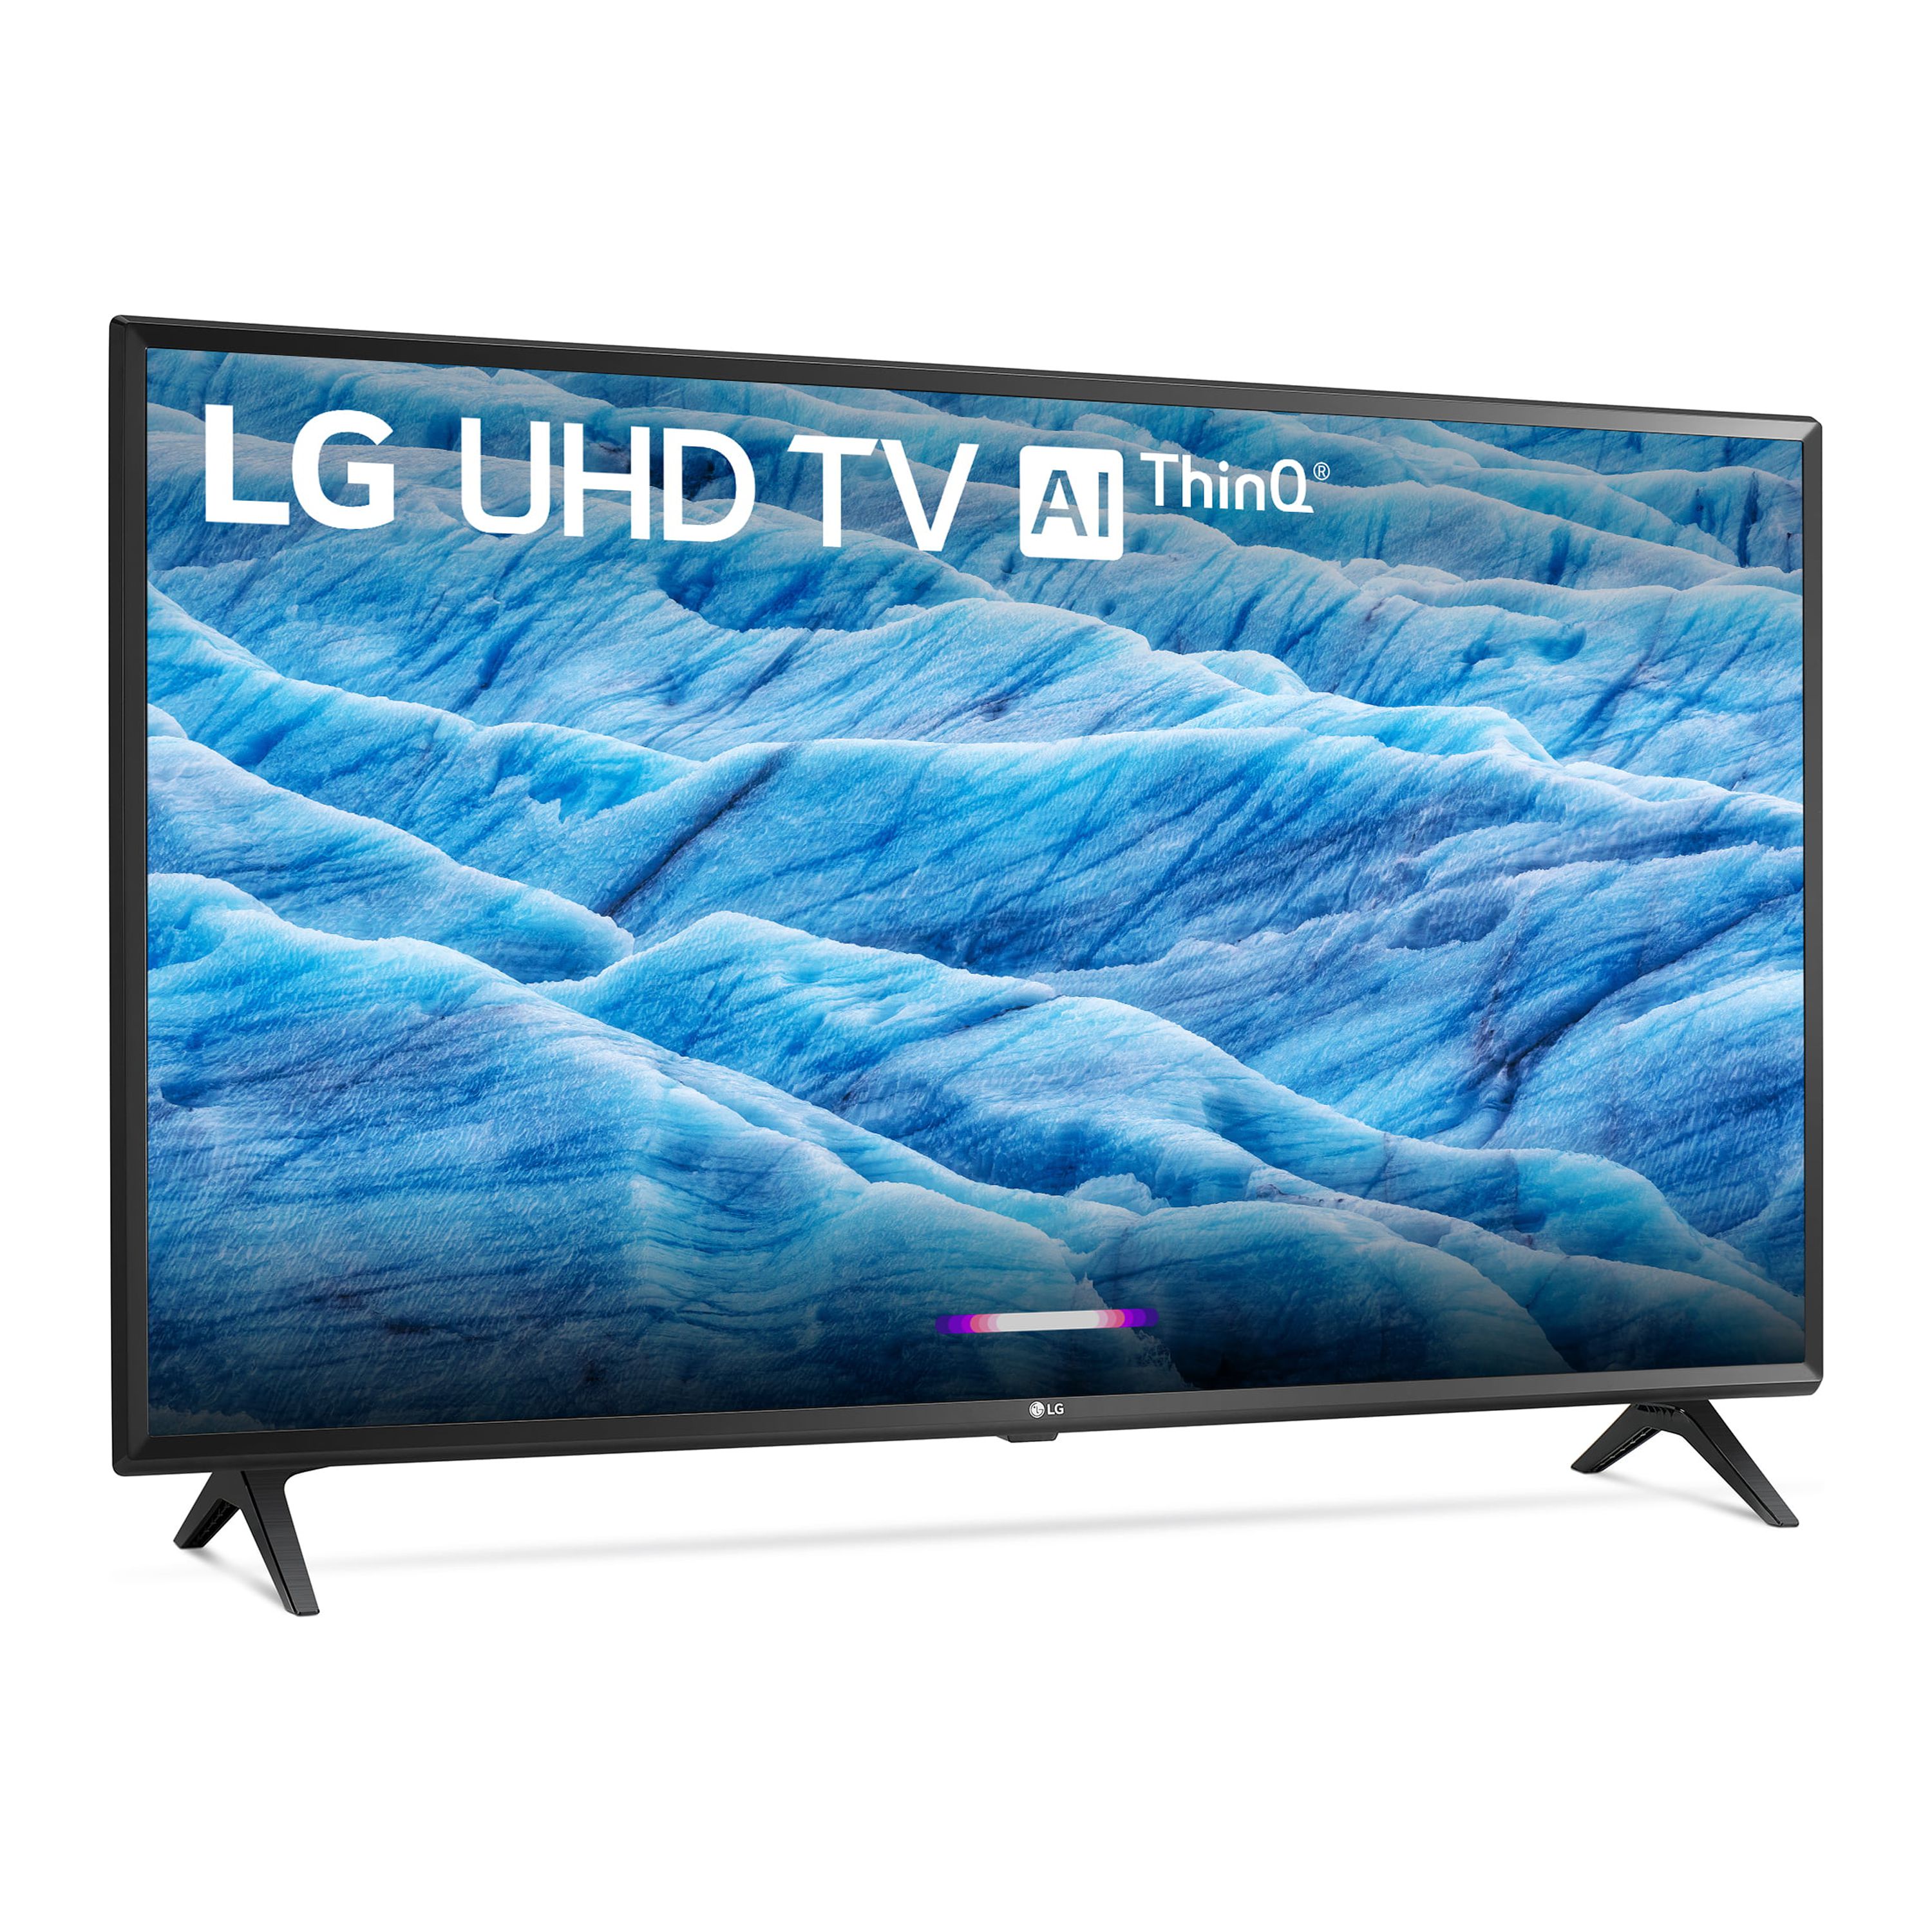 LG 49" Class 4K (2160P) Ultra HD Smart LED HDR TV 49UM7300PUA 2019 Model - image 3 of 13